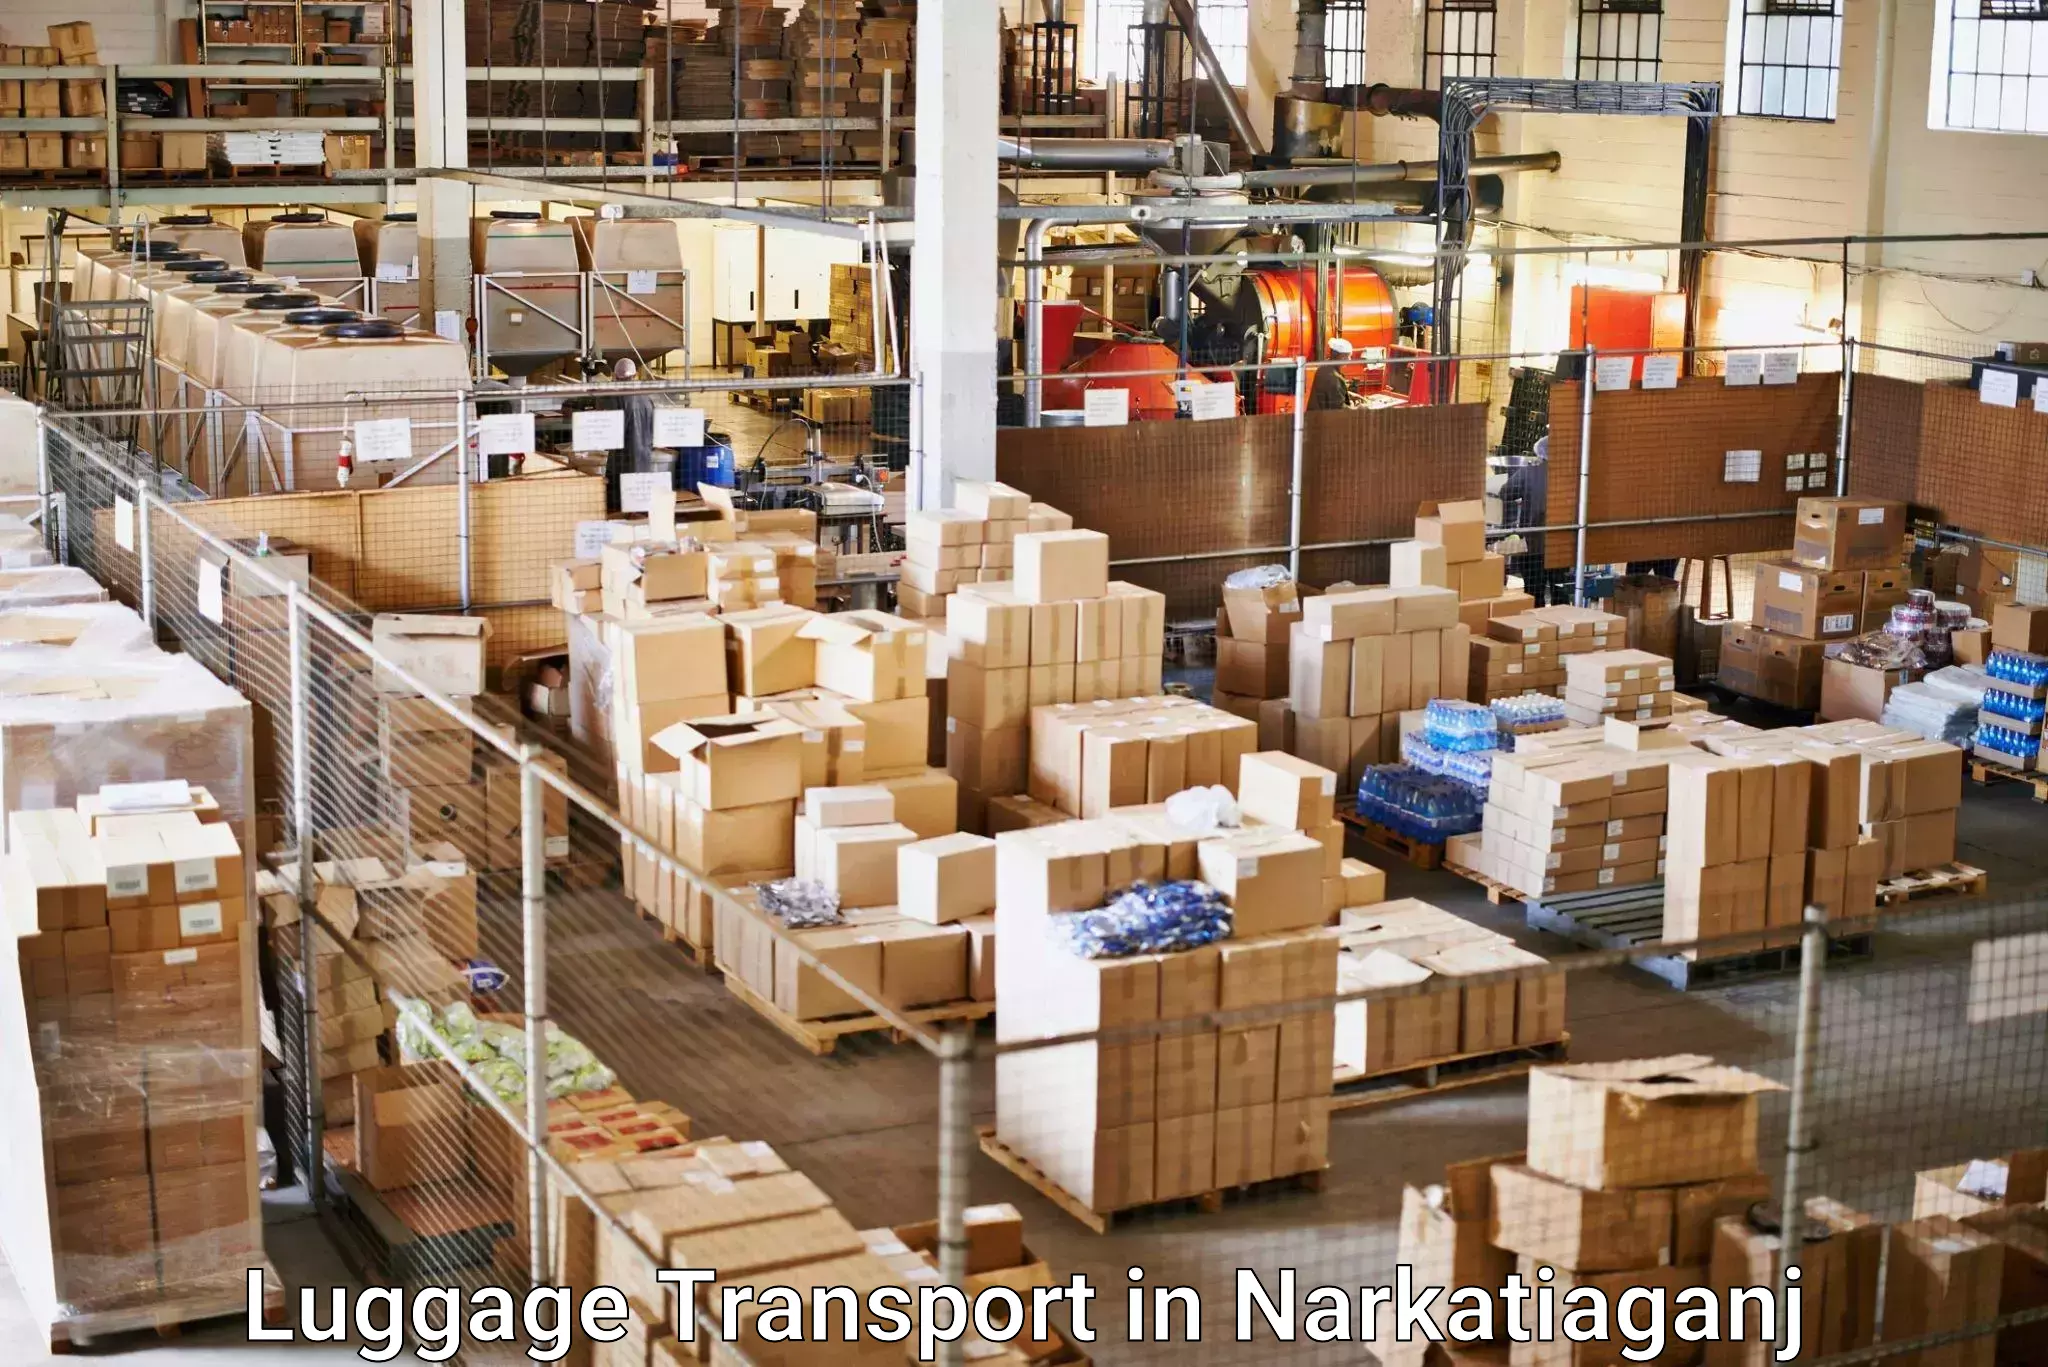 Baggage transport estimate in Narkatiaganj